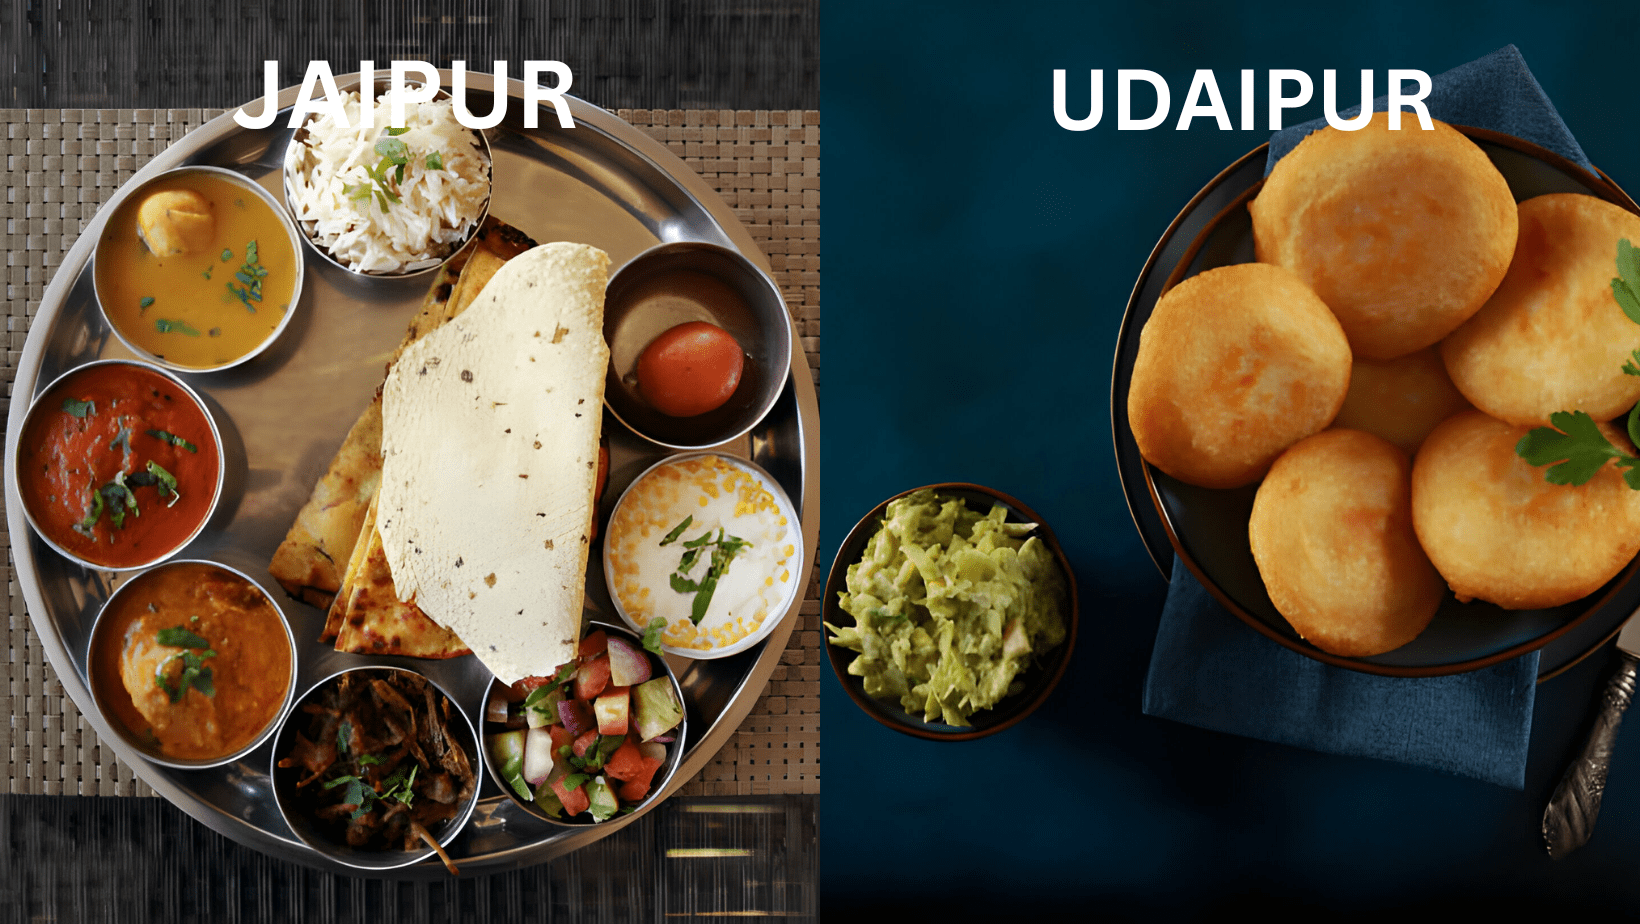 jaipur-vs-udaipur-food